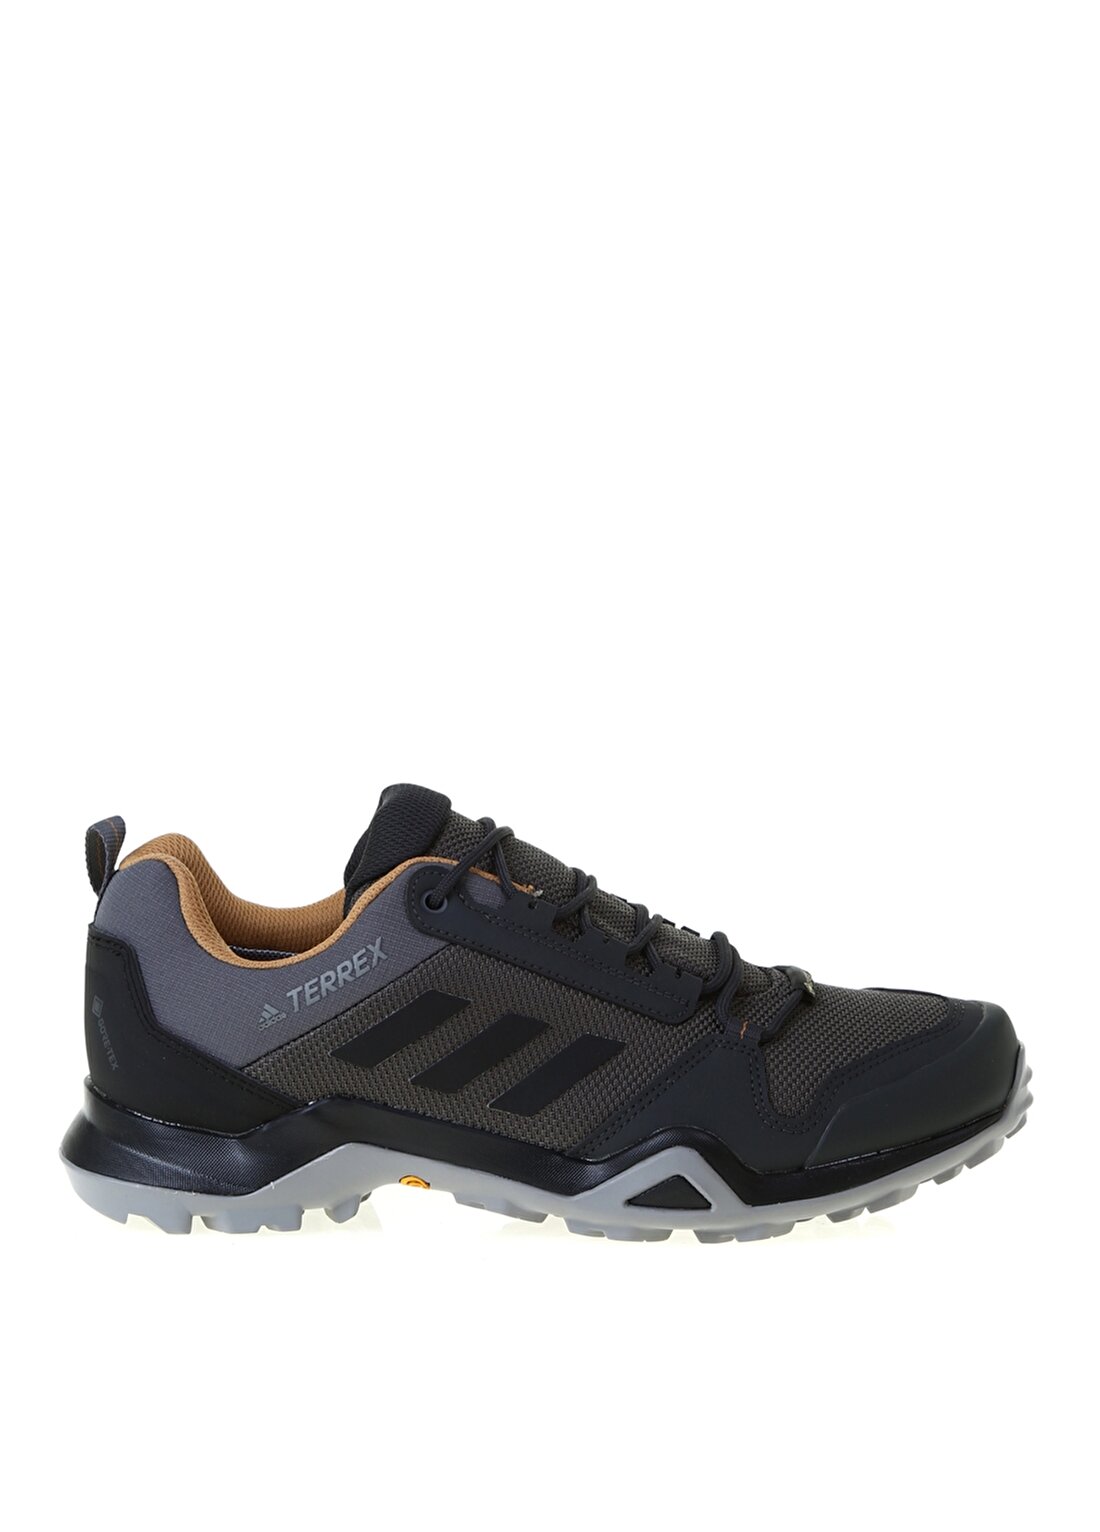 Adidas BC0517 Terrex Gri Erkek Outdoor Ayakkabısı